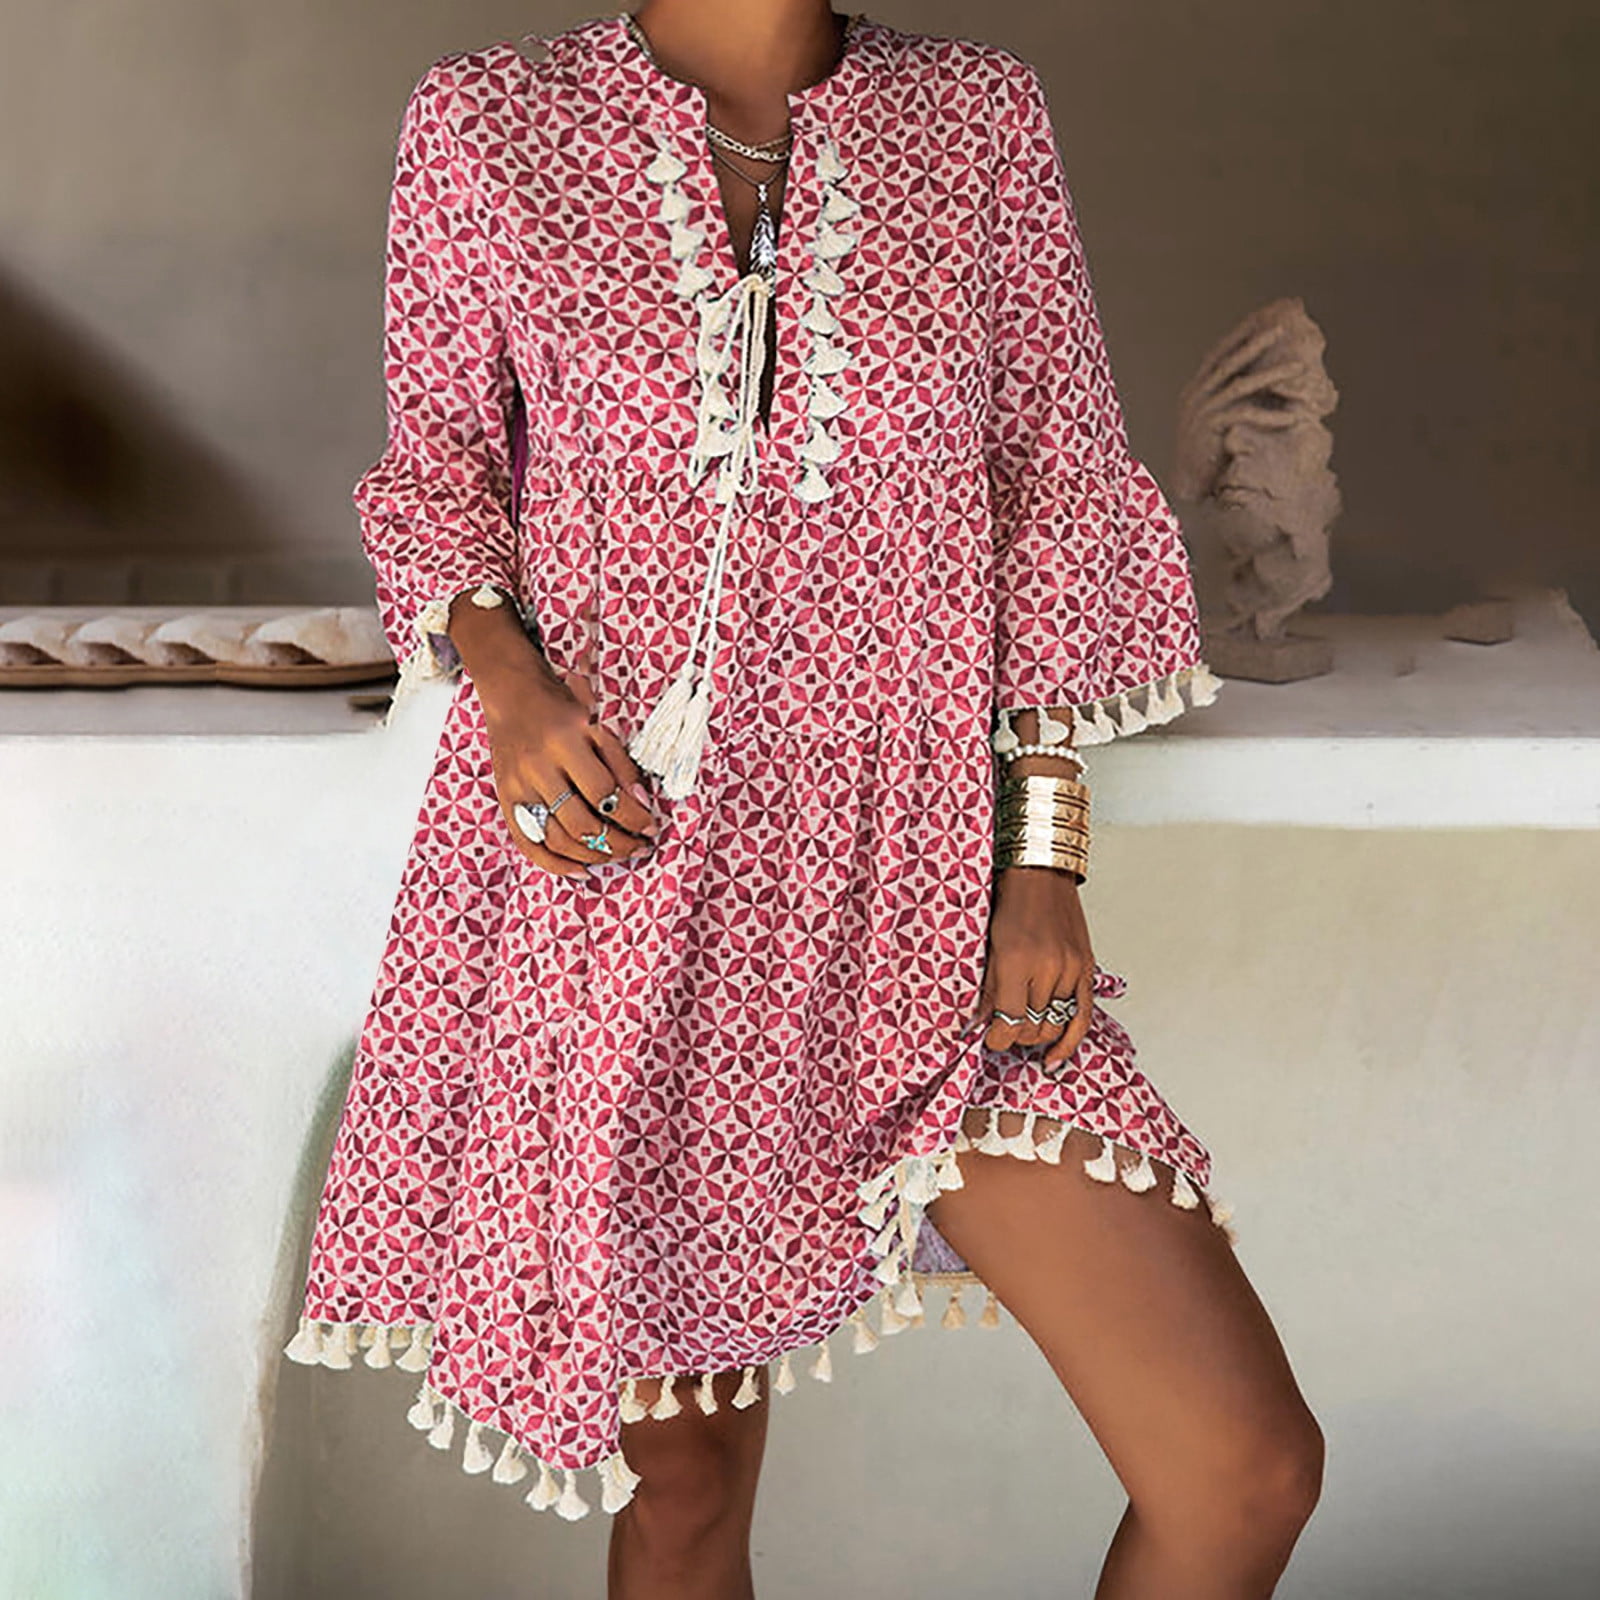 Floenr for Women,Fashion Women Summer Casual Print Dress V-Neck Short ...